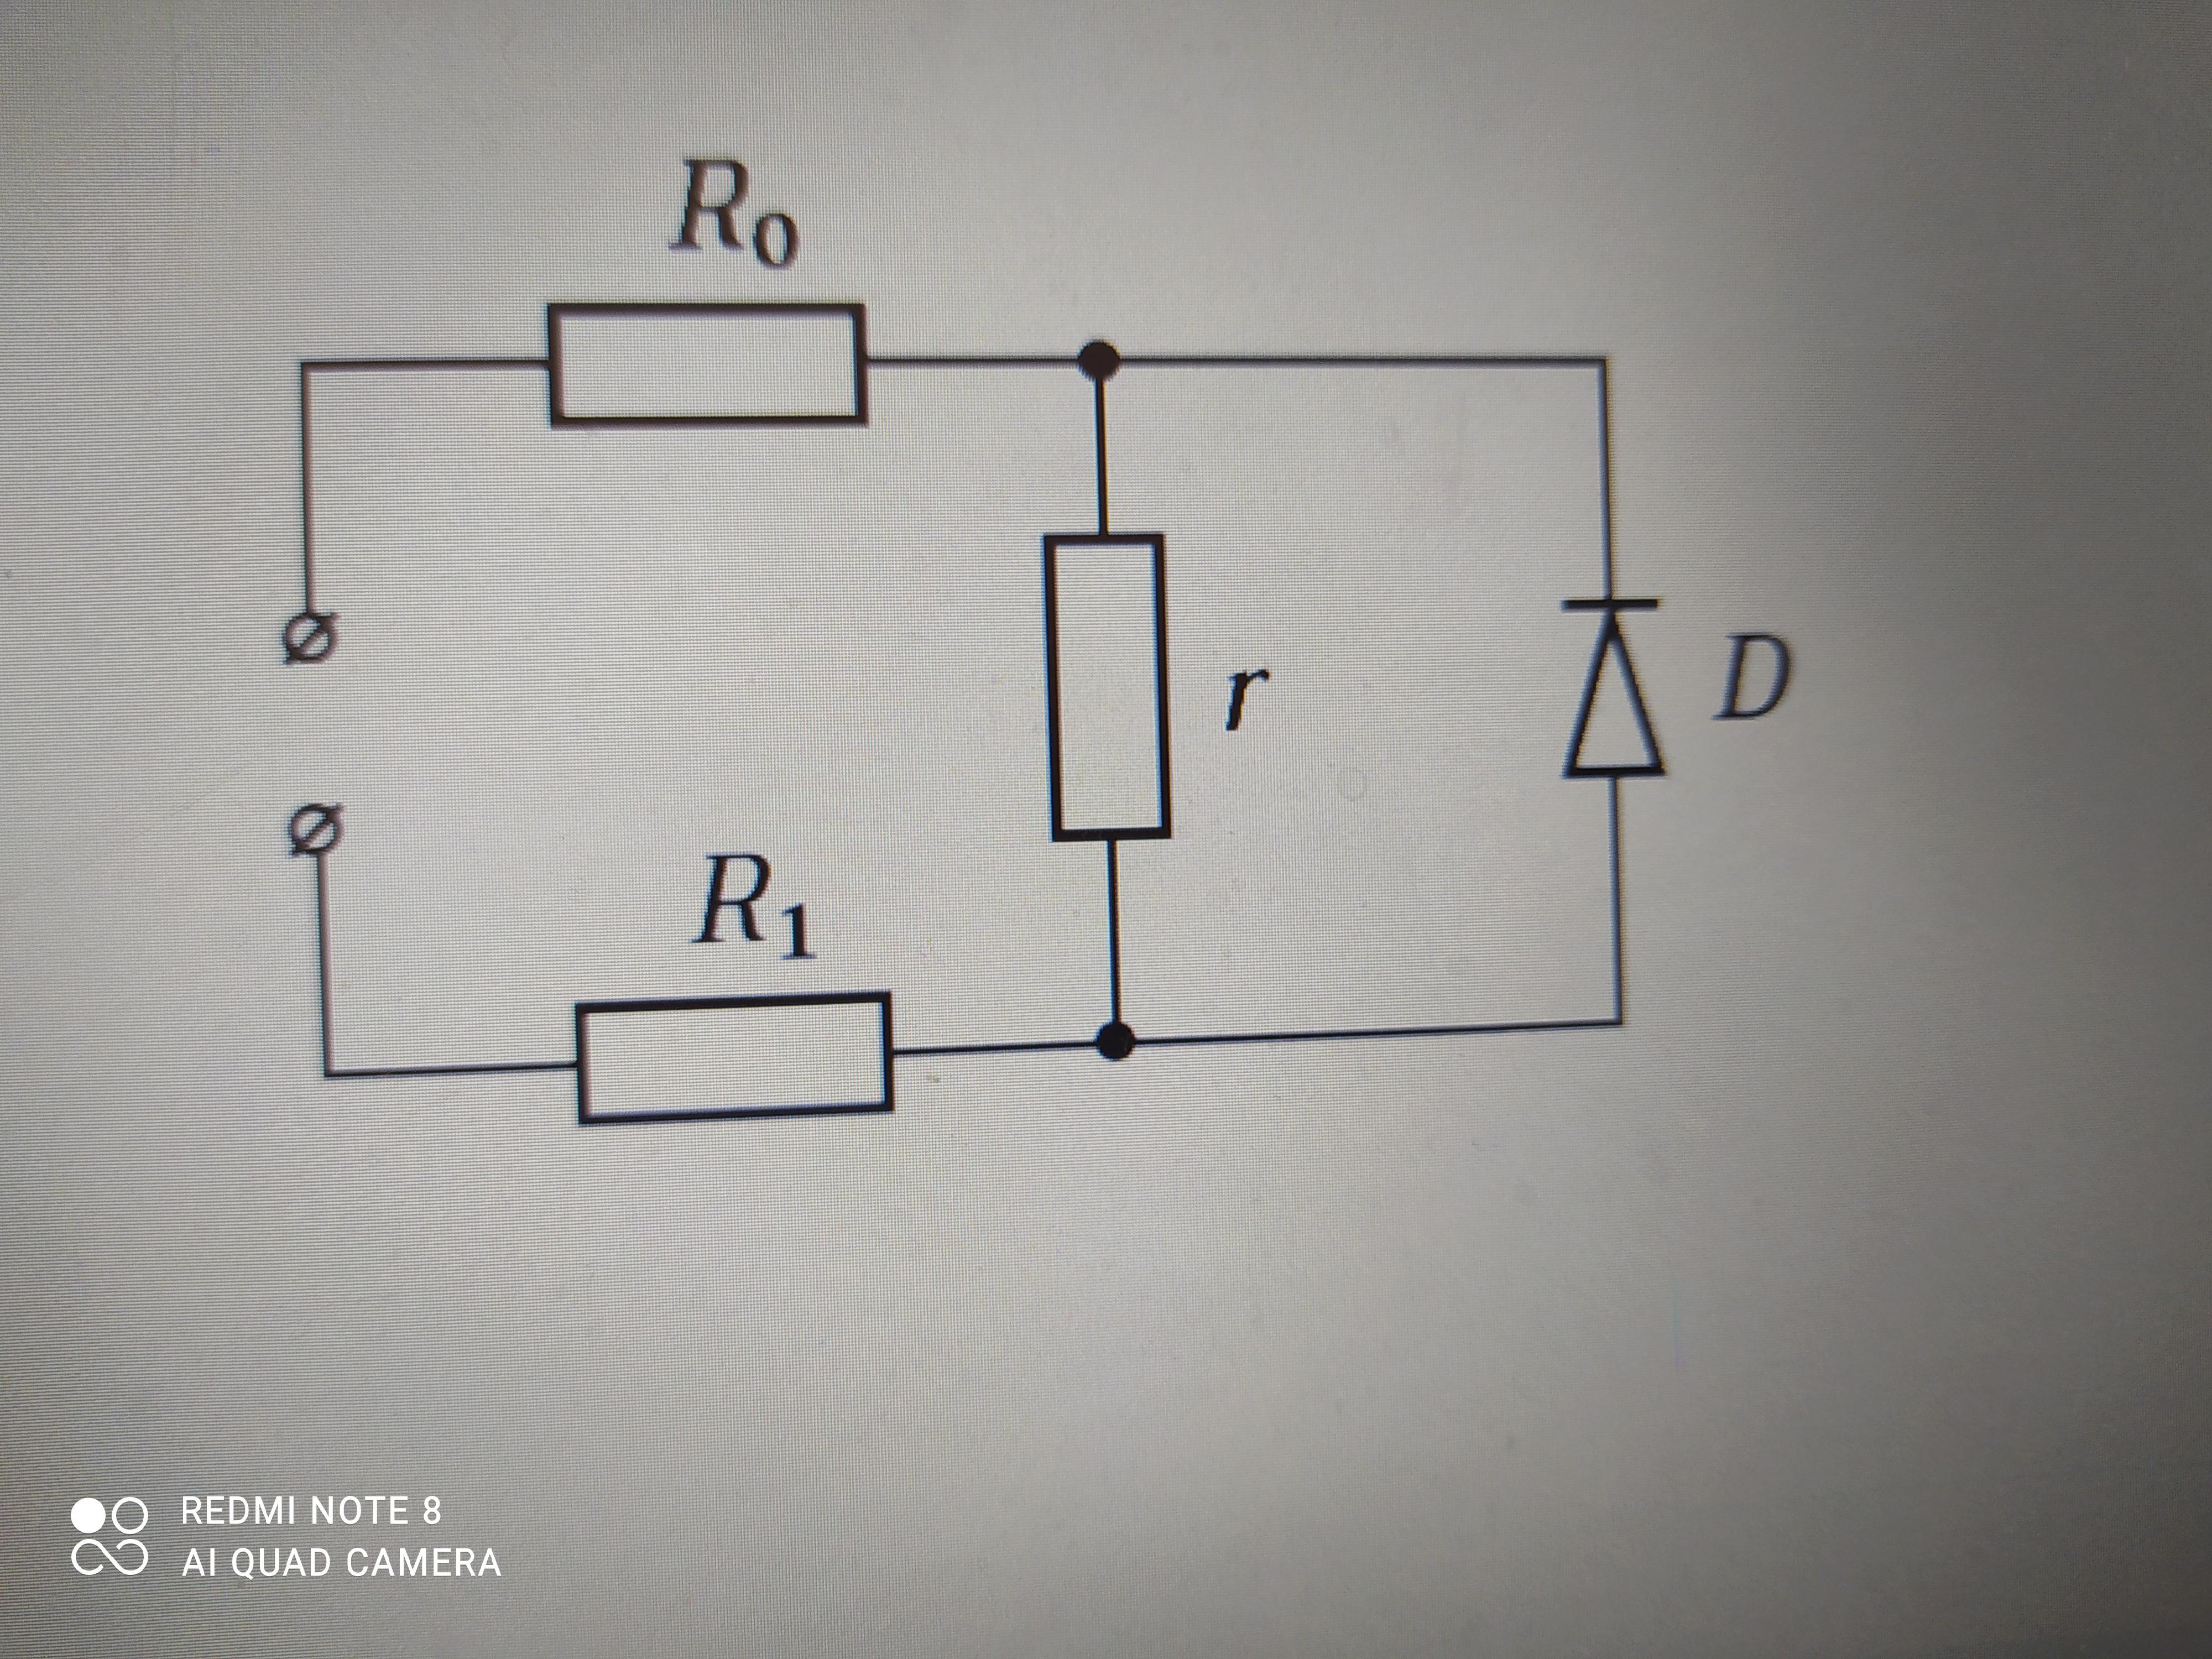 Идеальный диод сопротивление. Идеальный диод в цепи. Сопротивление r1. Идеальный диод на полевом транзисторе. Найти сопротивление цепи изображенной на рисунке.